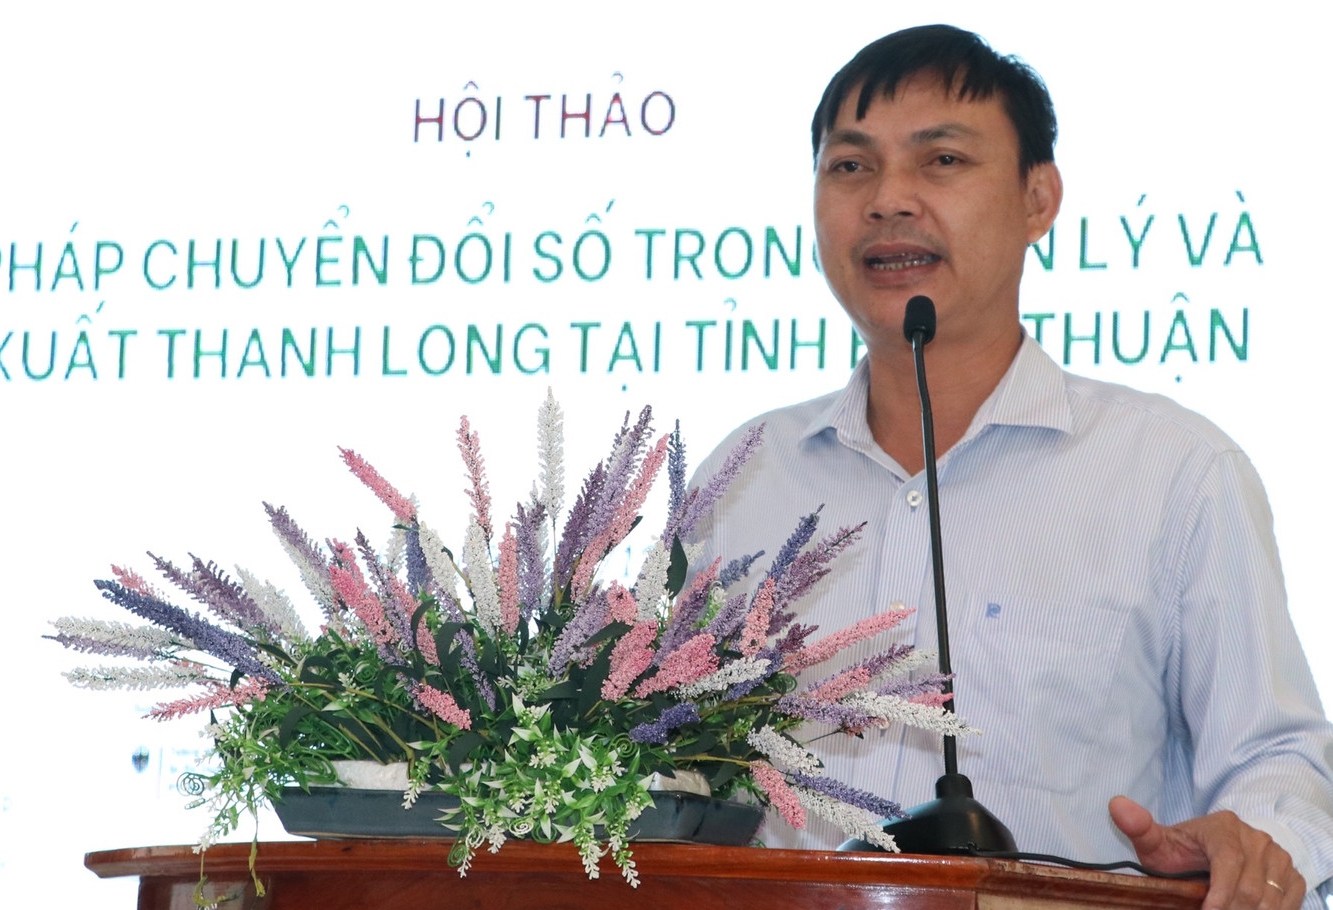 Áp dụng chuyển đổi số trong quản lý và sản xuất thanh long ở Bình Thuận - Ảnh 2.